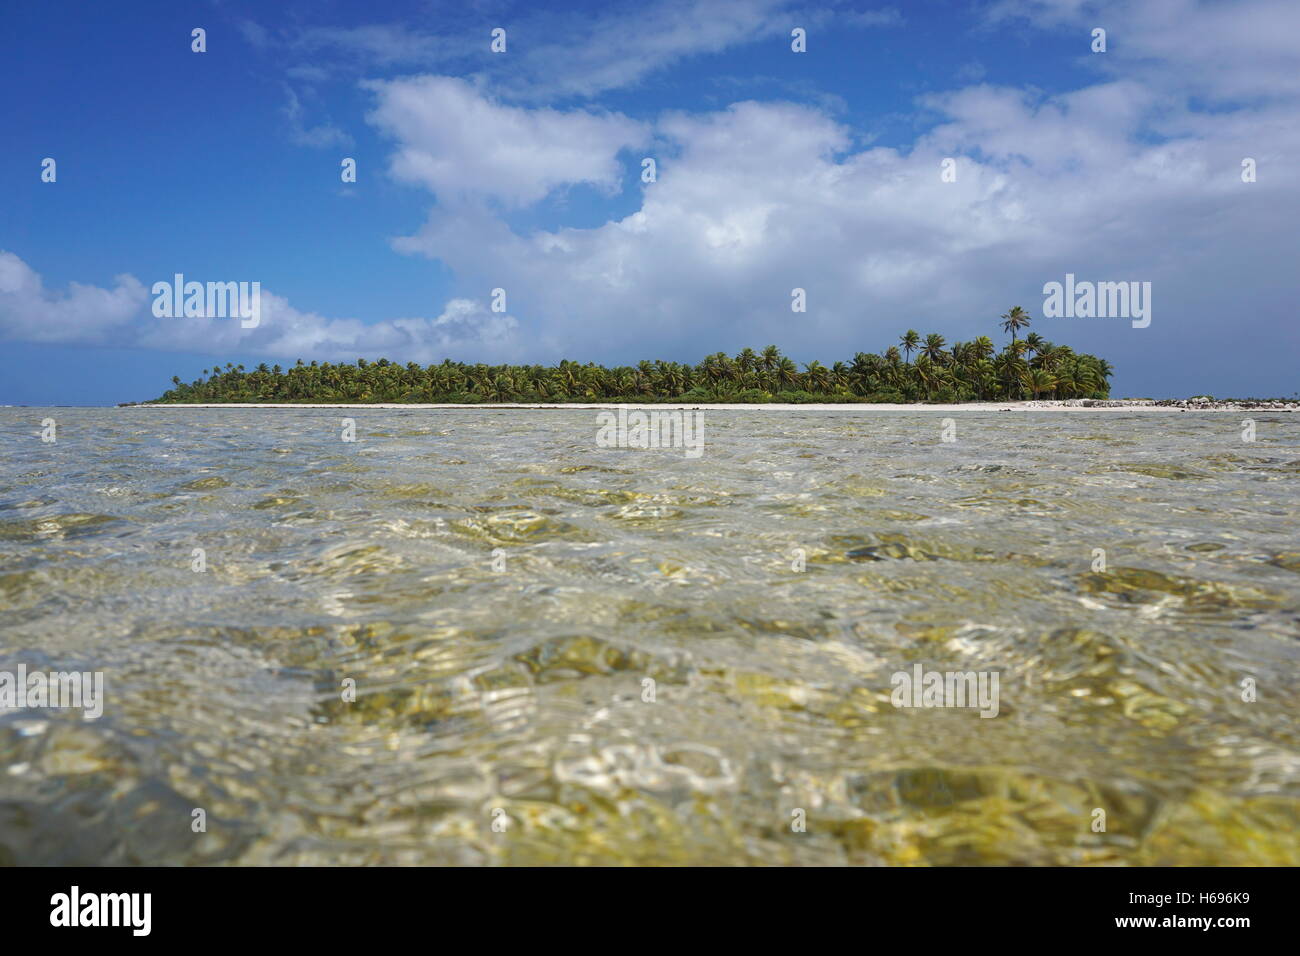 L'îlot tropical de l'atoll de Tikehau, vu d'un chenal peu profond (hoa) entre l'océan et le lagon, Polynésie Française Banque D'Images